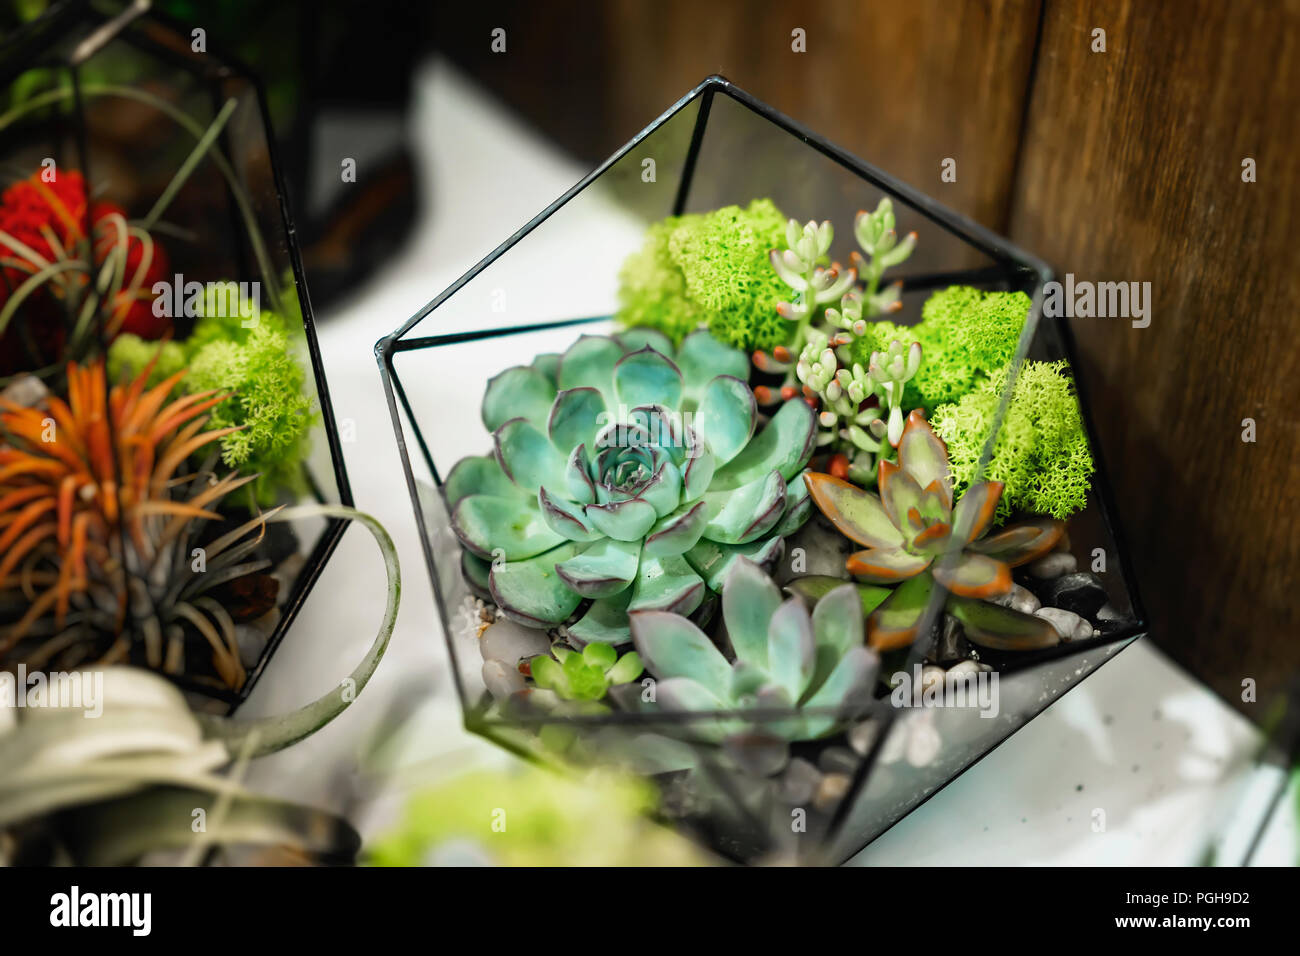 Eingestellt von Sukkulenten, die in einer geometrischen Aquarium, florarium  close-up Stockfotografie - Alamy